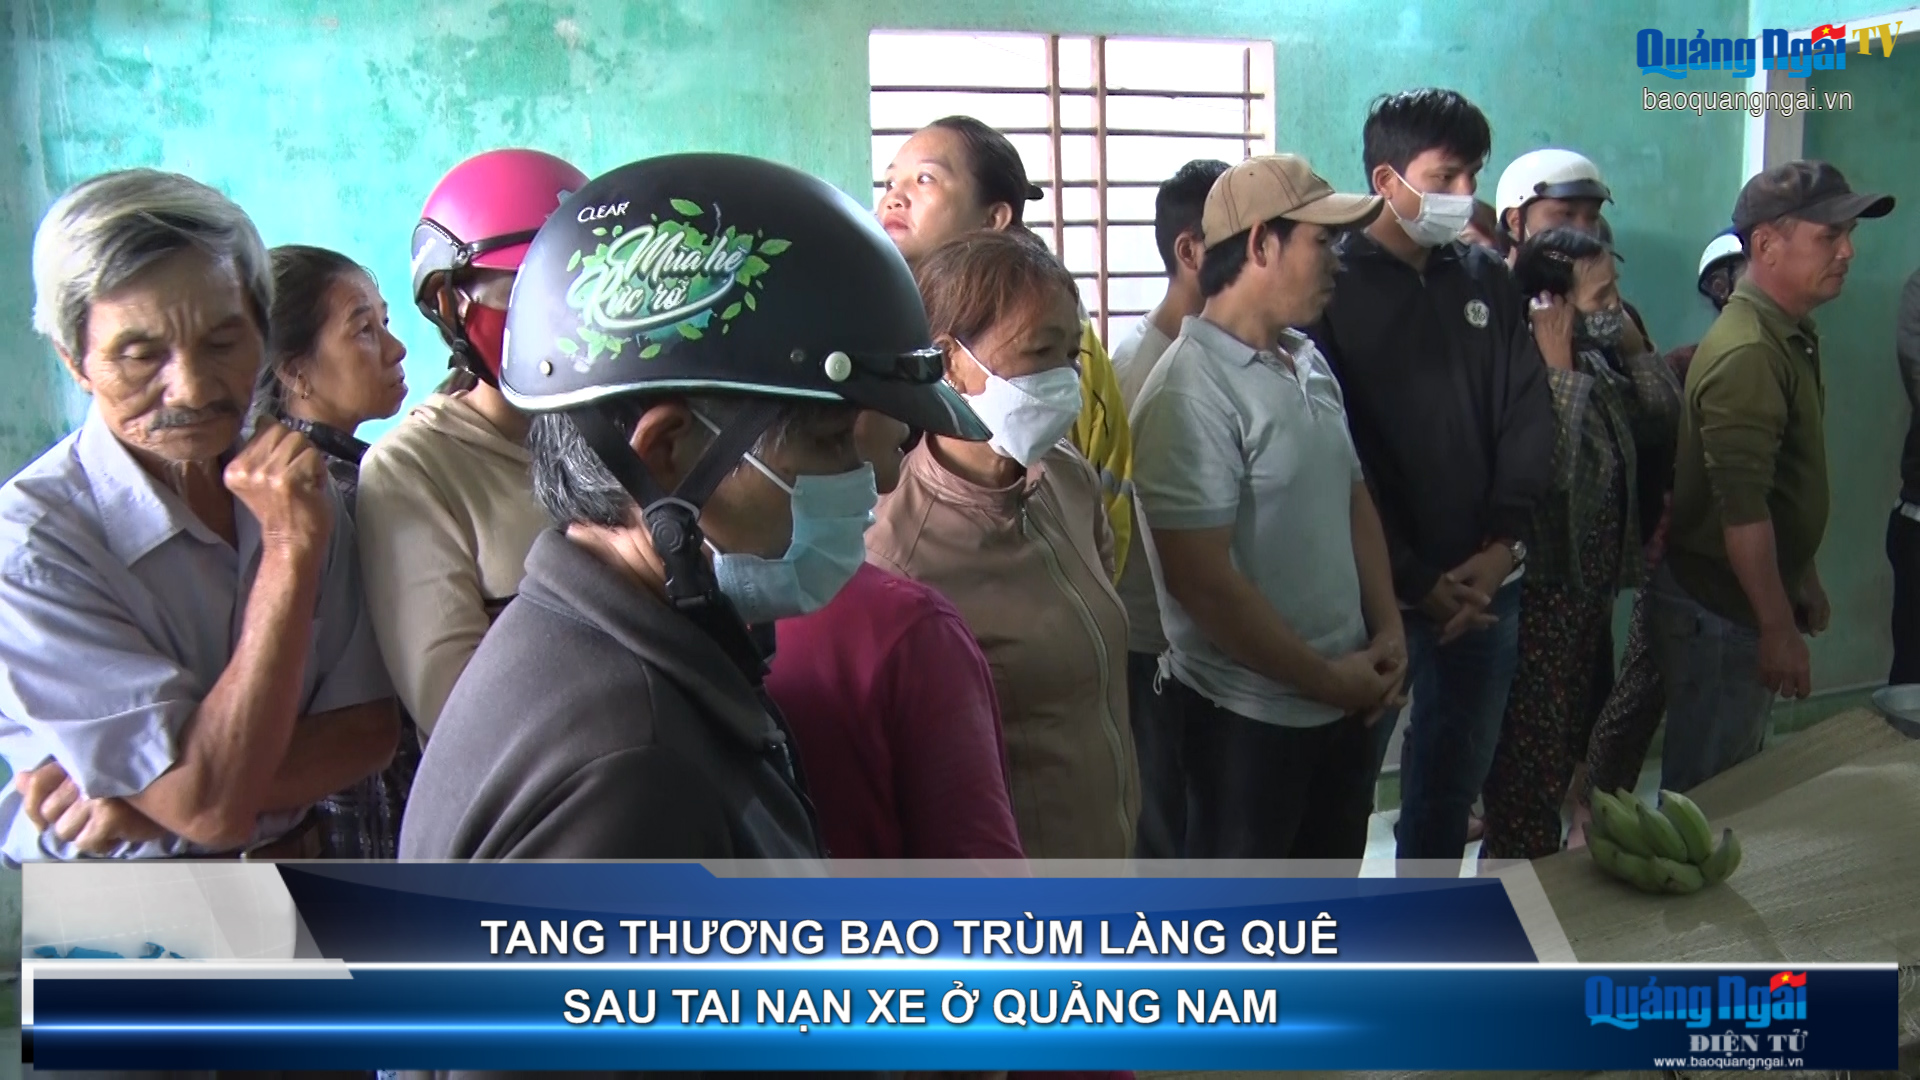 Video: Tang thương bao trùm làng quê sau tai nạn xe ở Quảng Nam